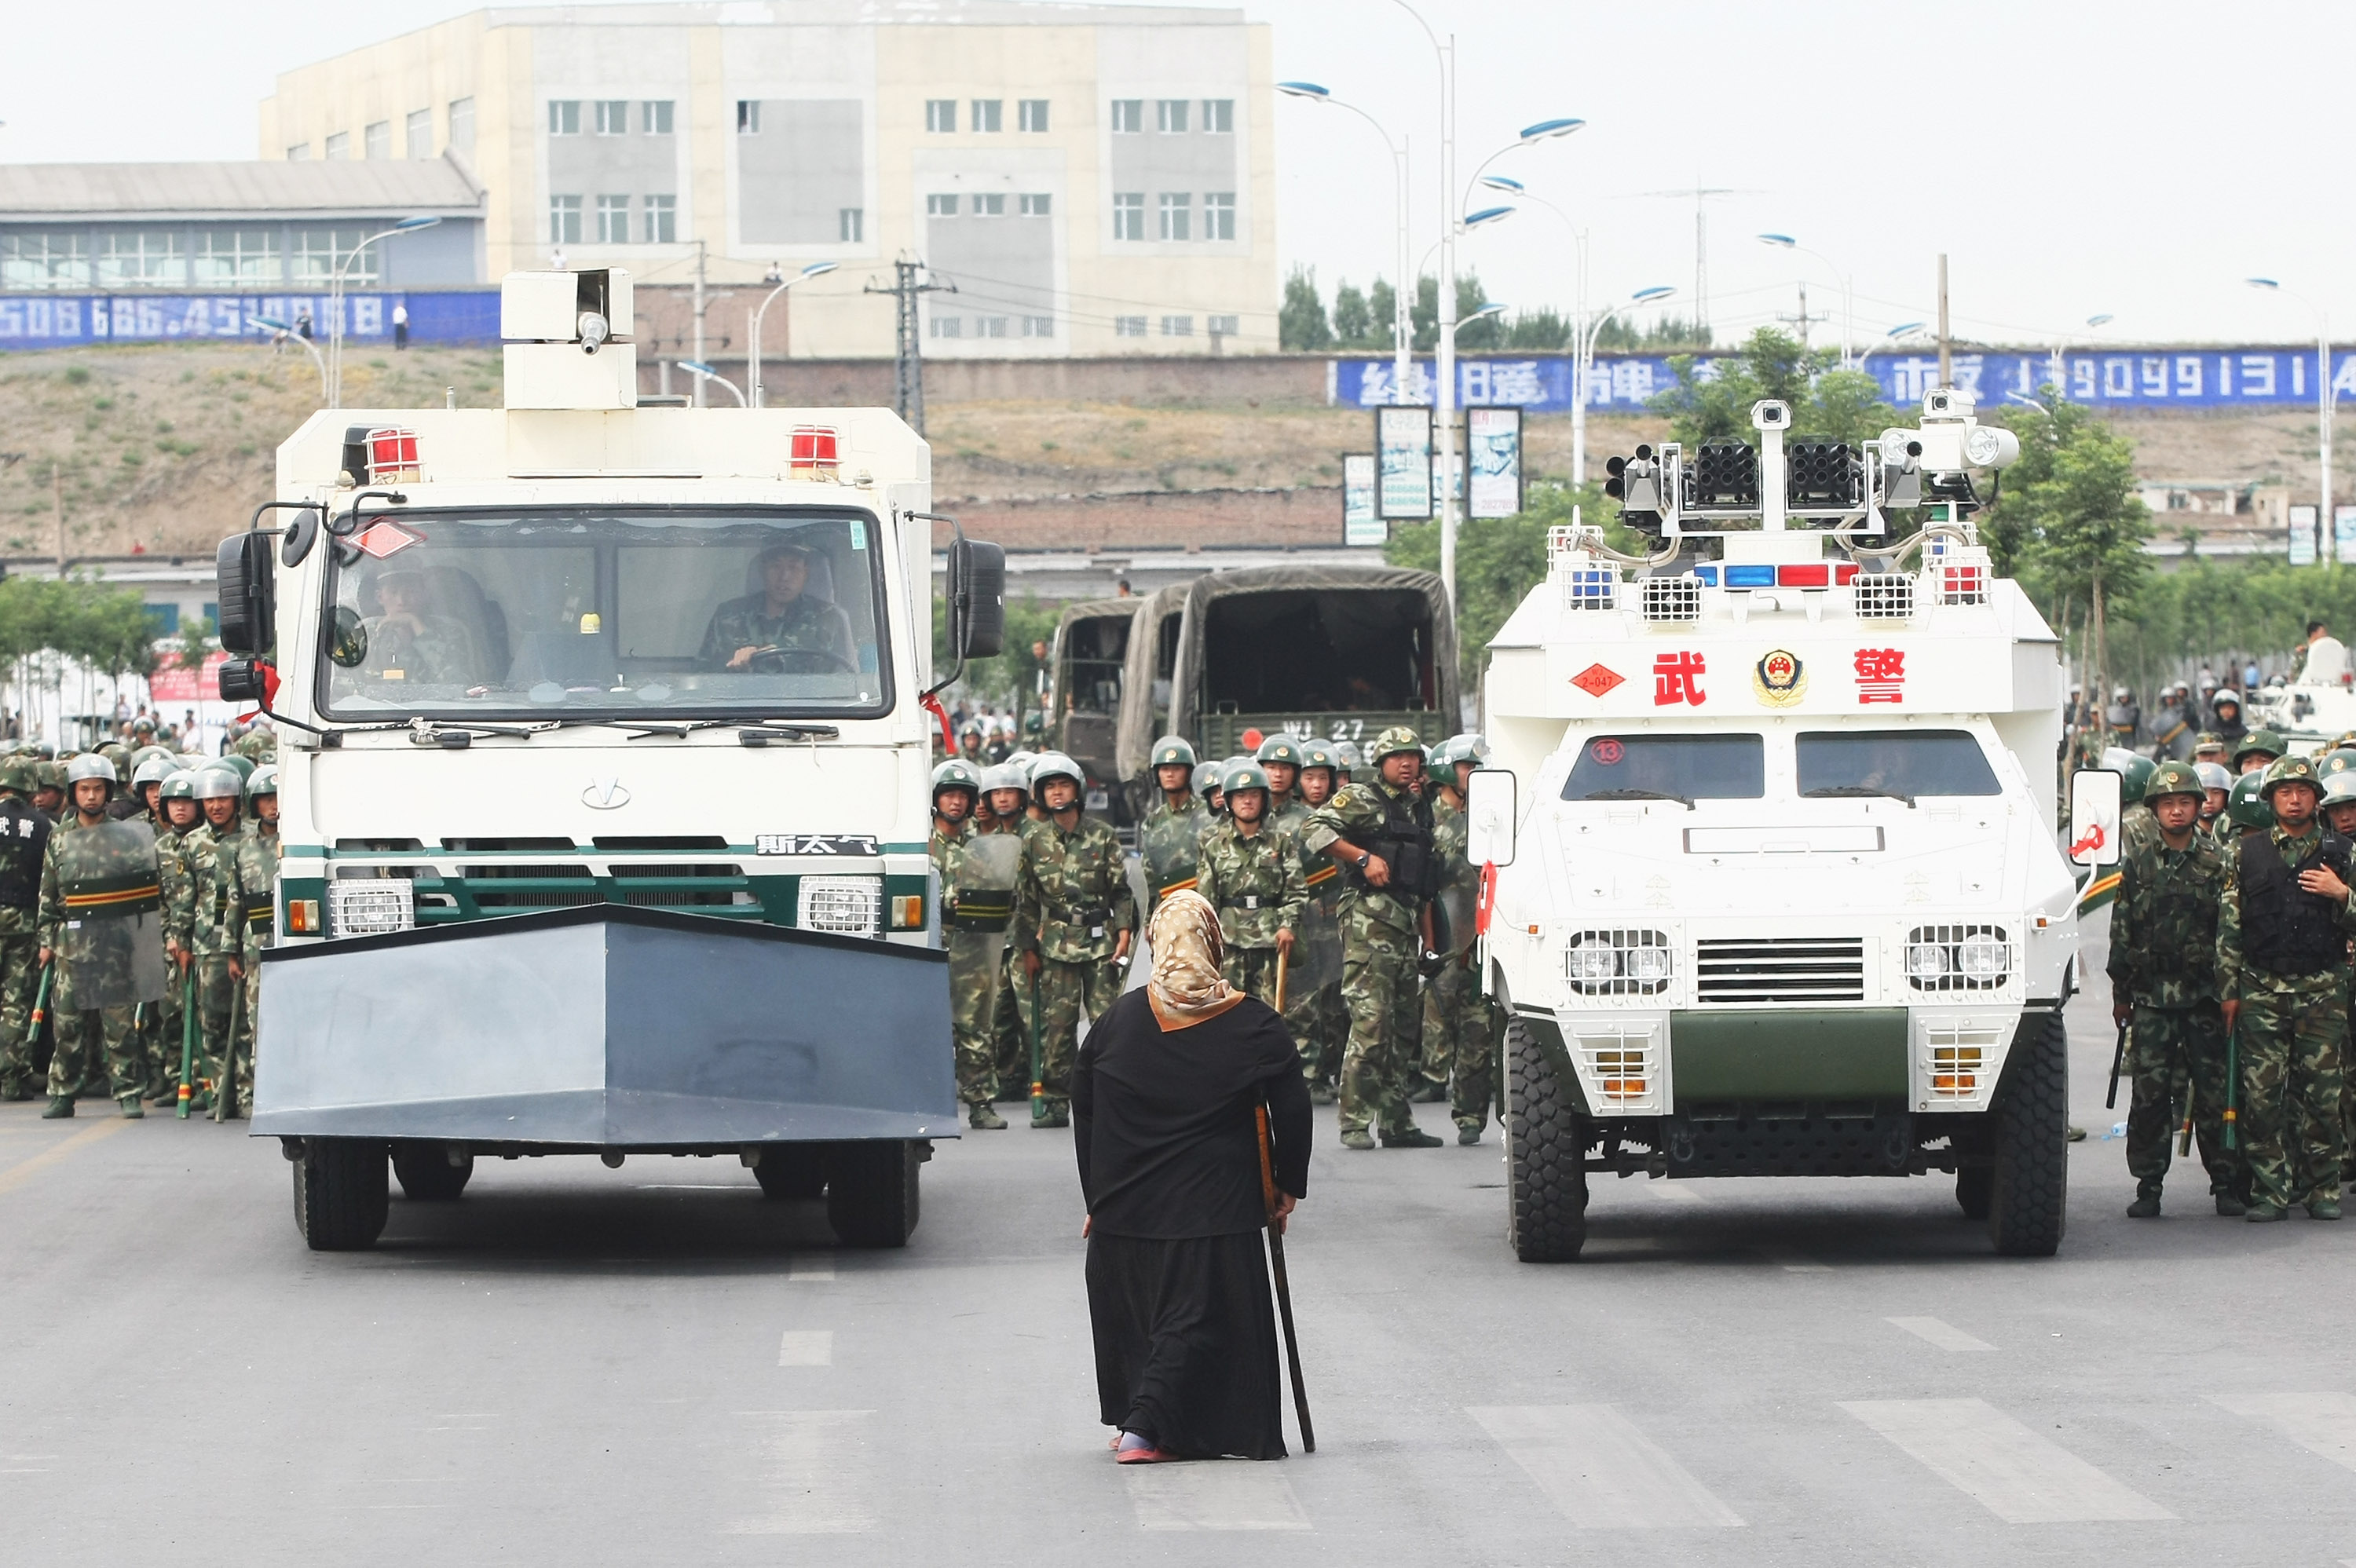 Riots Occur In China's Urumqi Ethnic Region